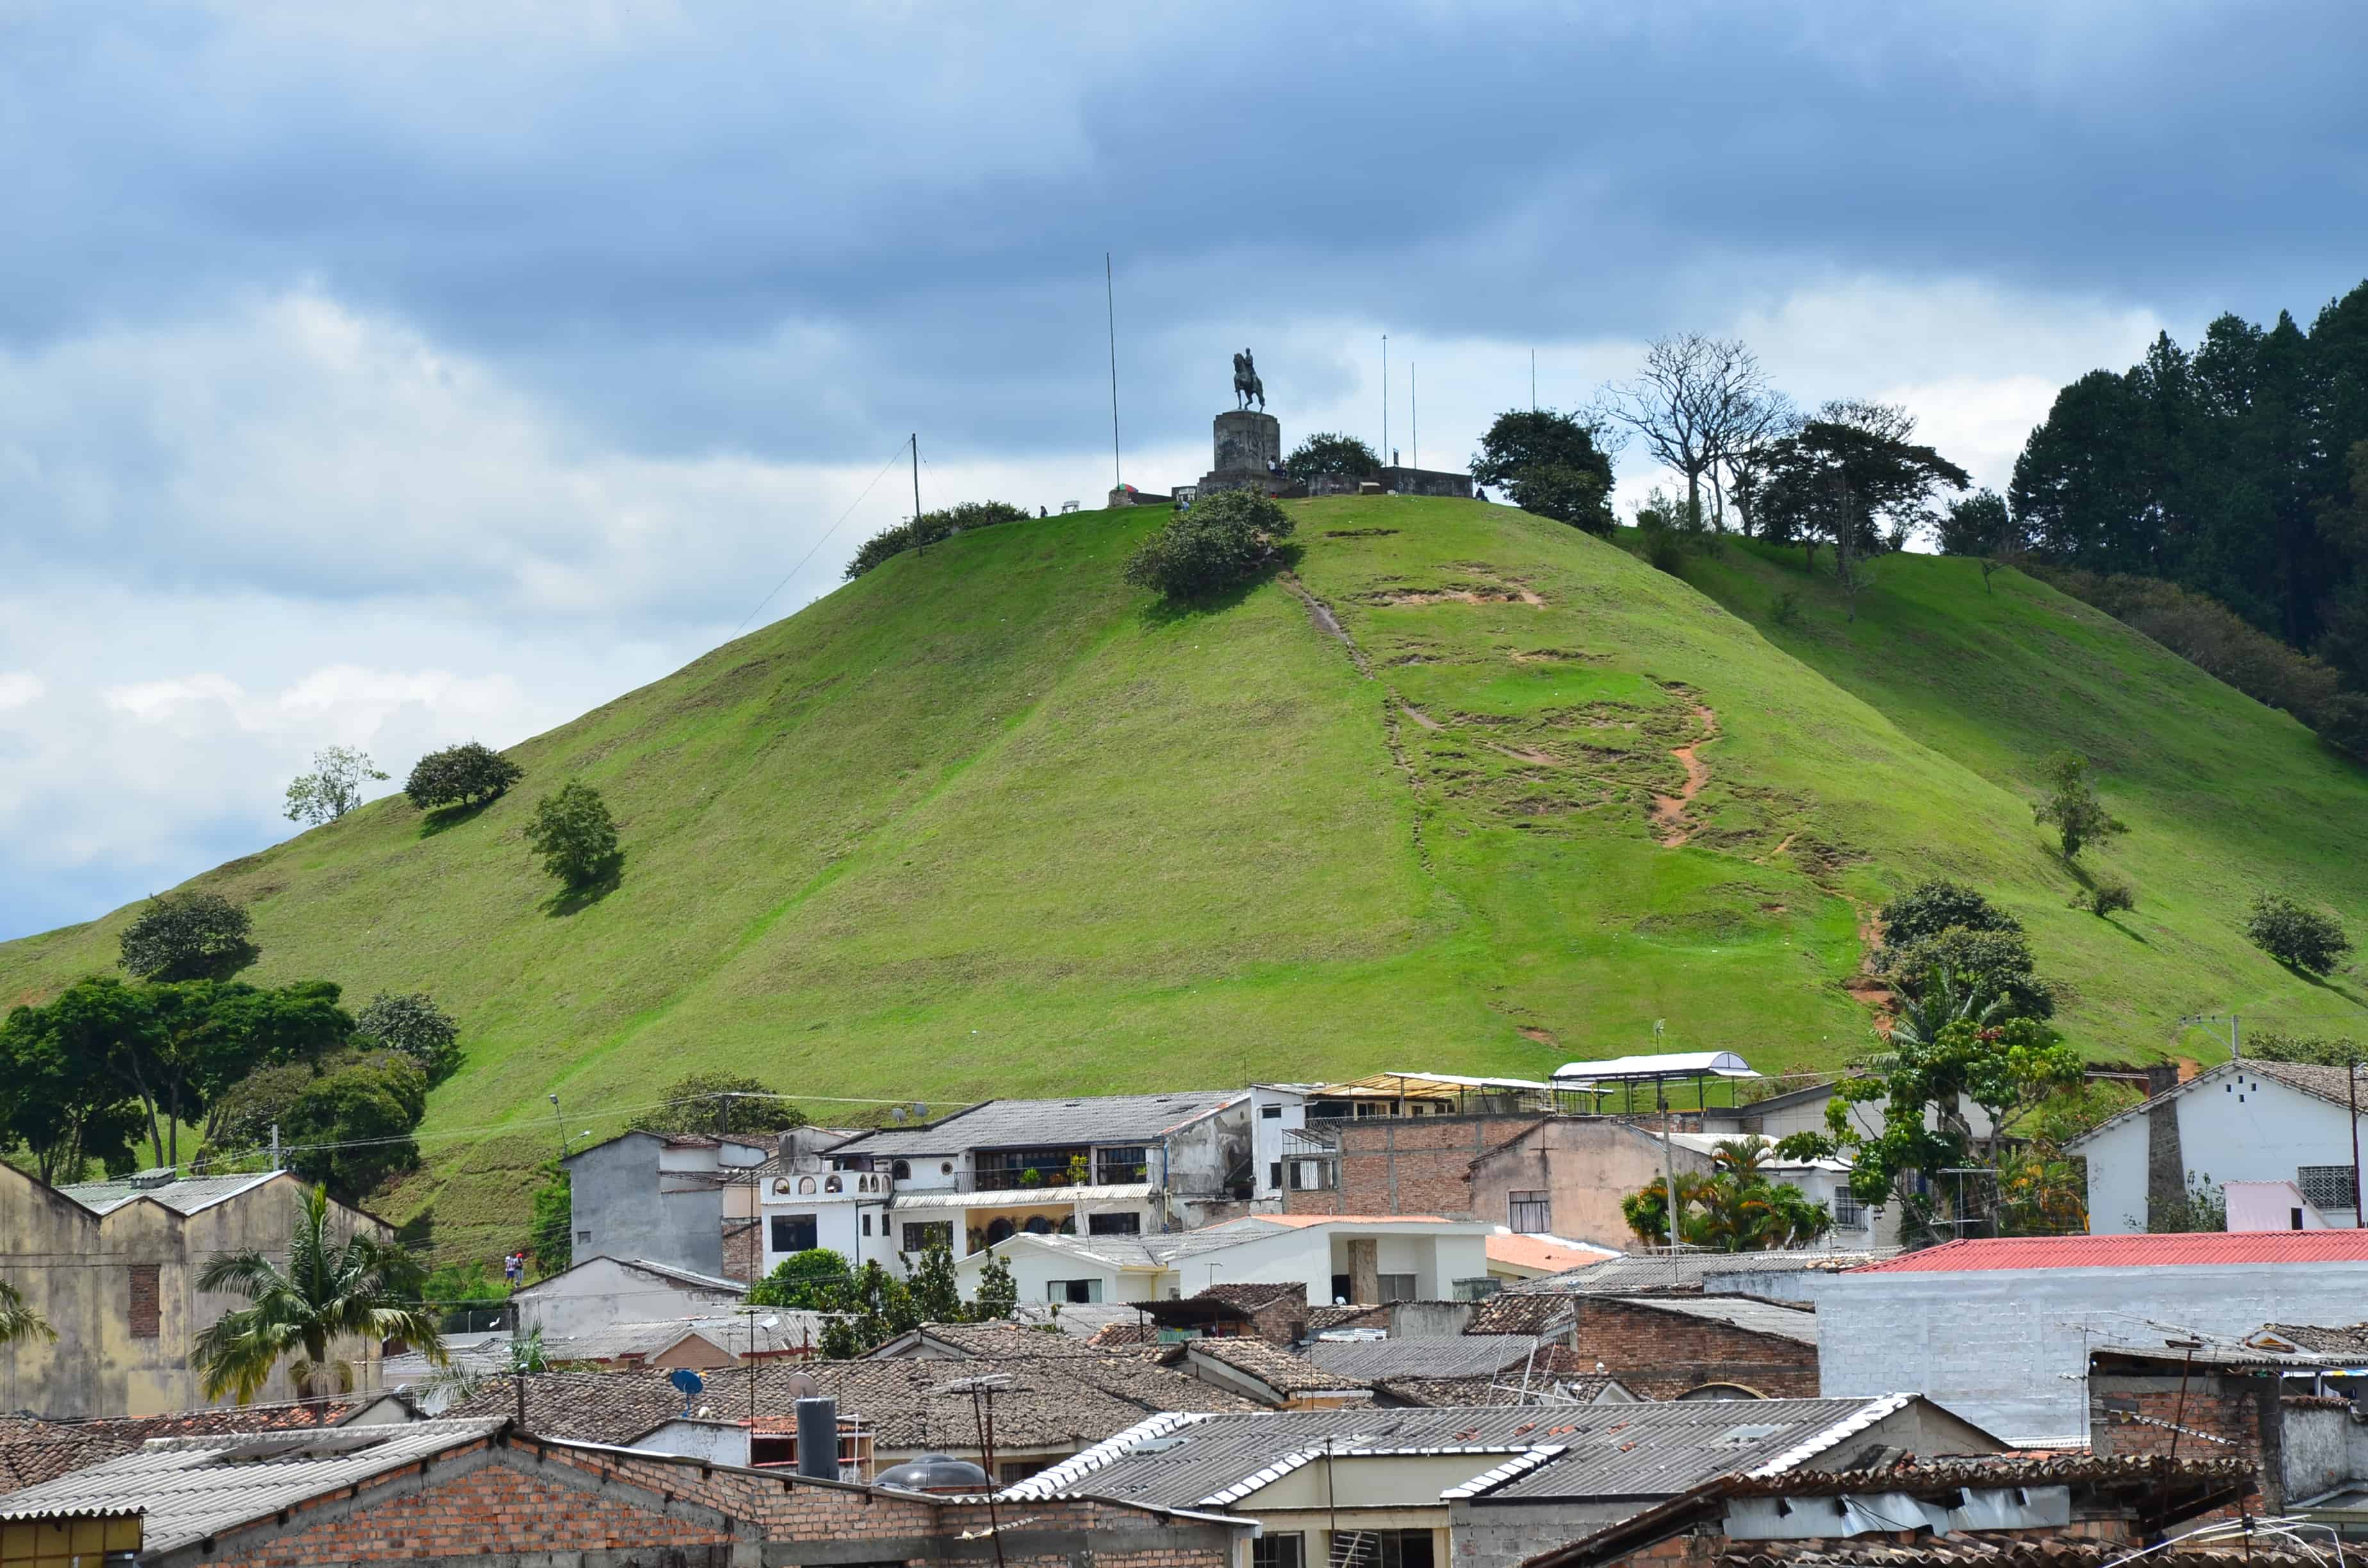 El Morro de Tulcán in Popayán, Cauca, Colombia